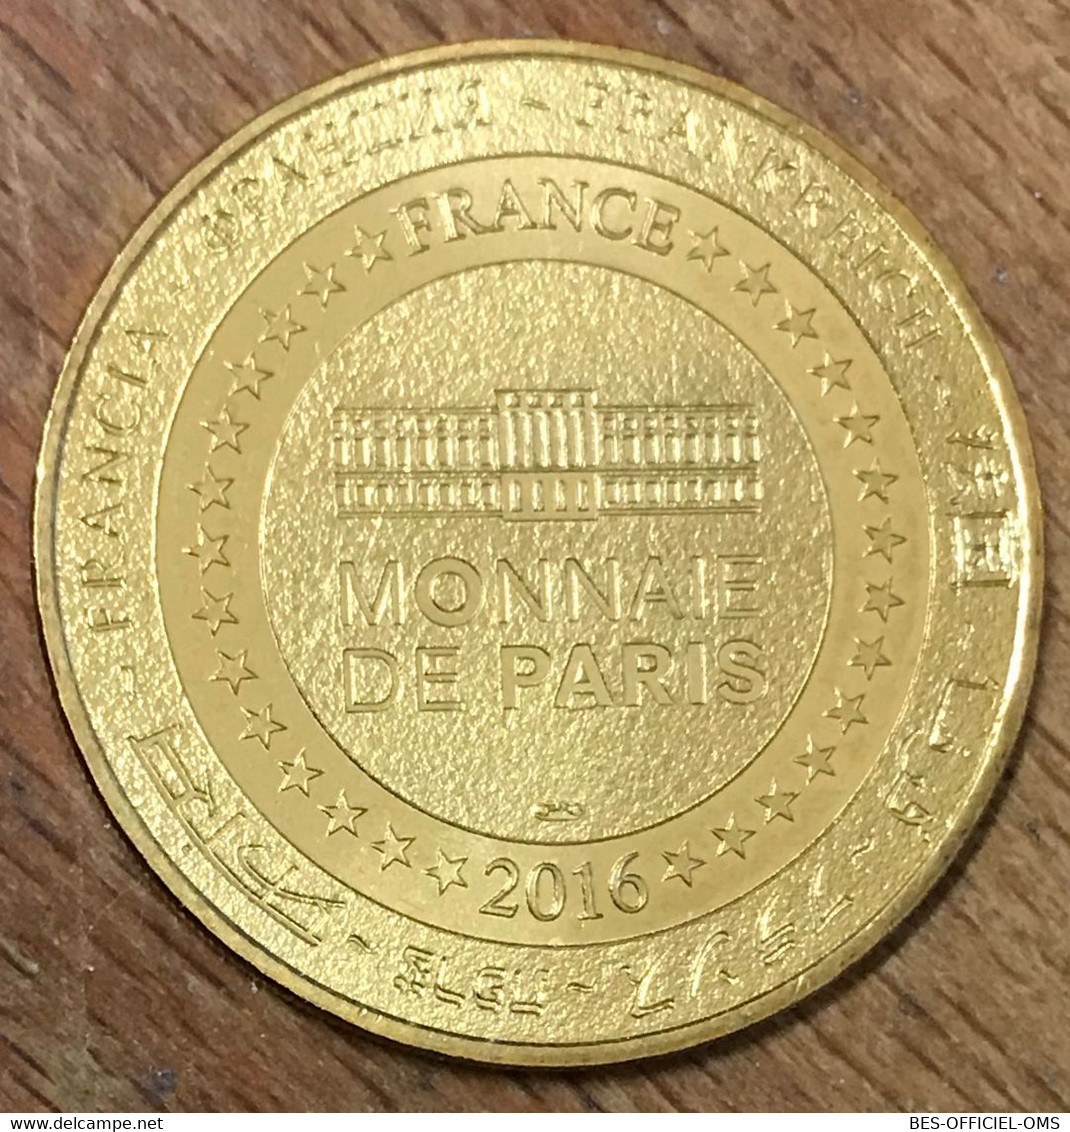 62 ARRAS LA CARRIÈRE DE WELLINGTON MDP 2016 MÉDAILLE SOUVENIR MONNAIE DE PARIS JETON TOURISTIQUE MEDALS COINS TOKENS - 2016